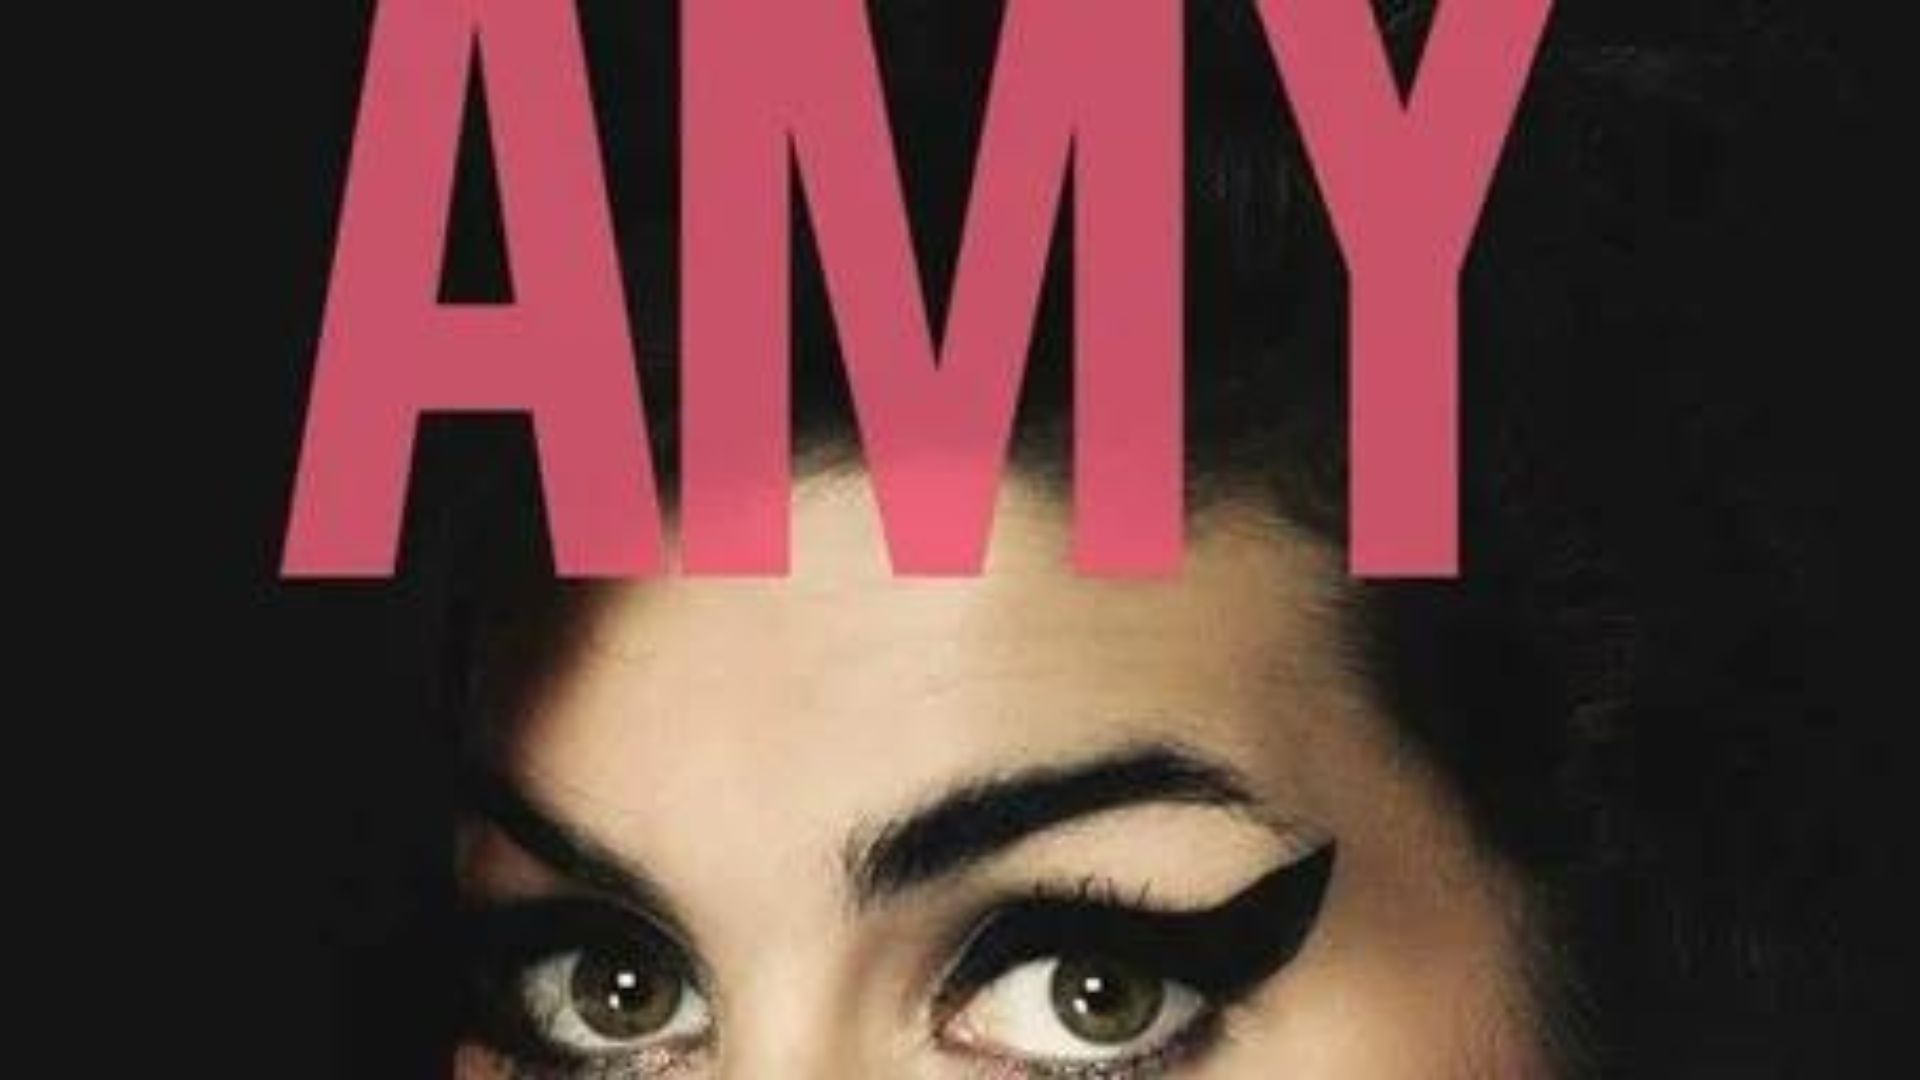 Amy Winehouse : 3 ressources bien meilleures que Back to Black pour comprendre Amy